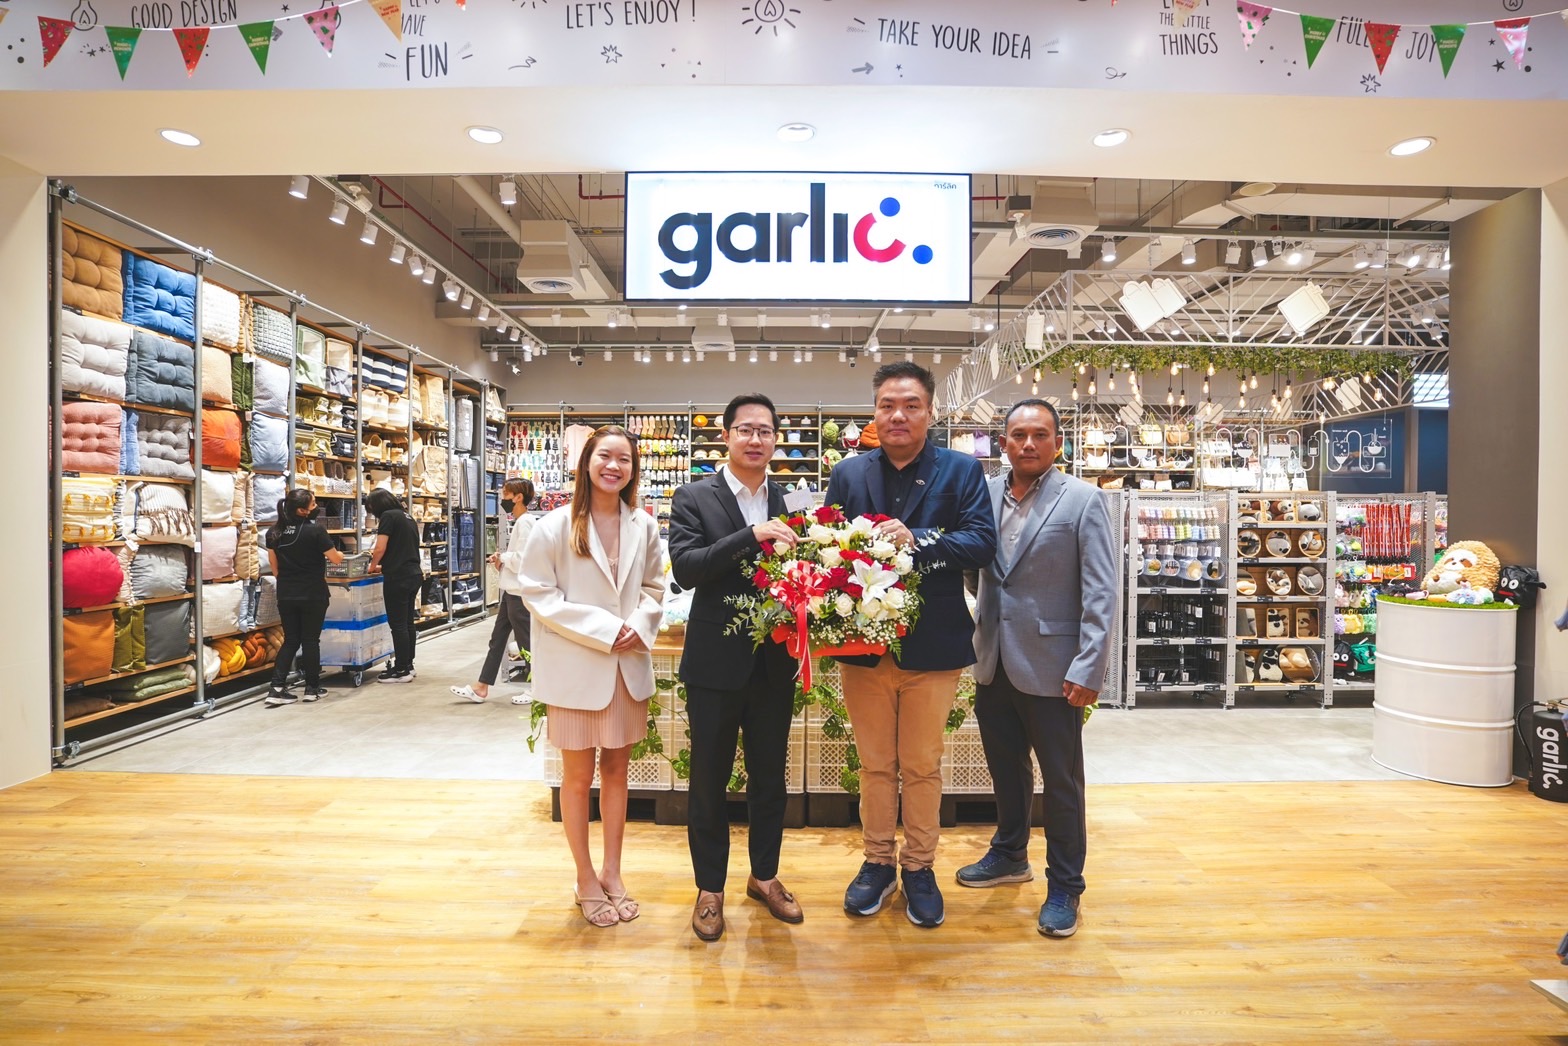 เปิดแล้ว! Garlic แหล่งรวมสินค้าแฟชั่นไลฟ์สไตล์ Chic & Cool สาขาแรกในภาคเหนือ ที่เมญ่าฯ เชียงใหม่